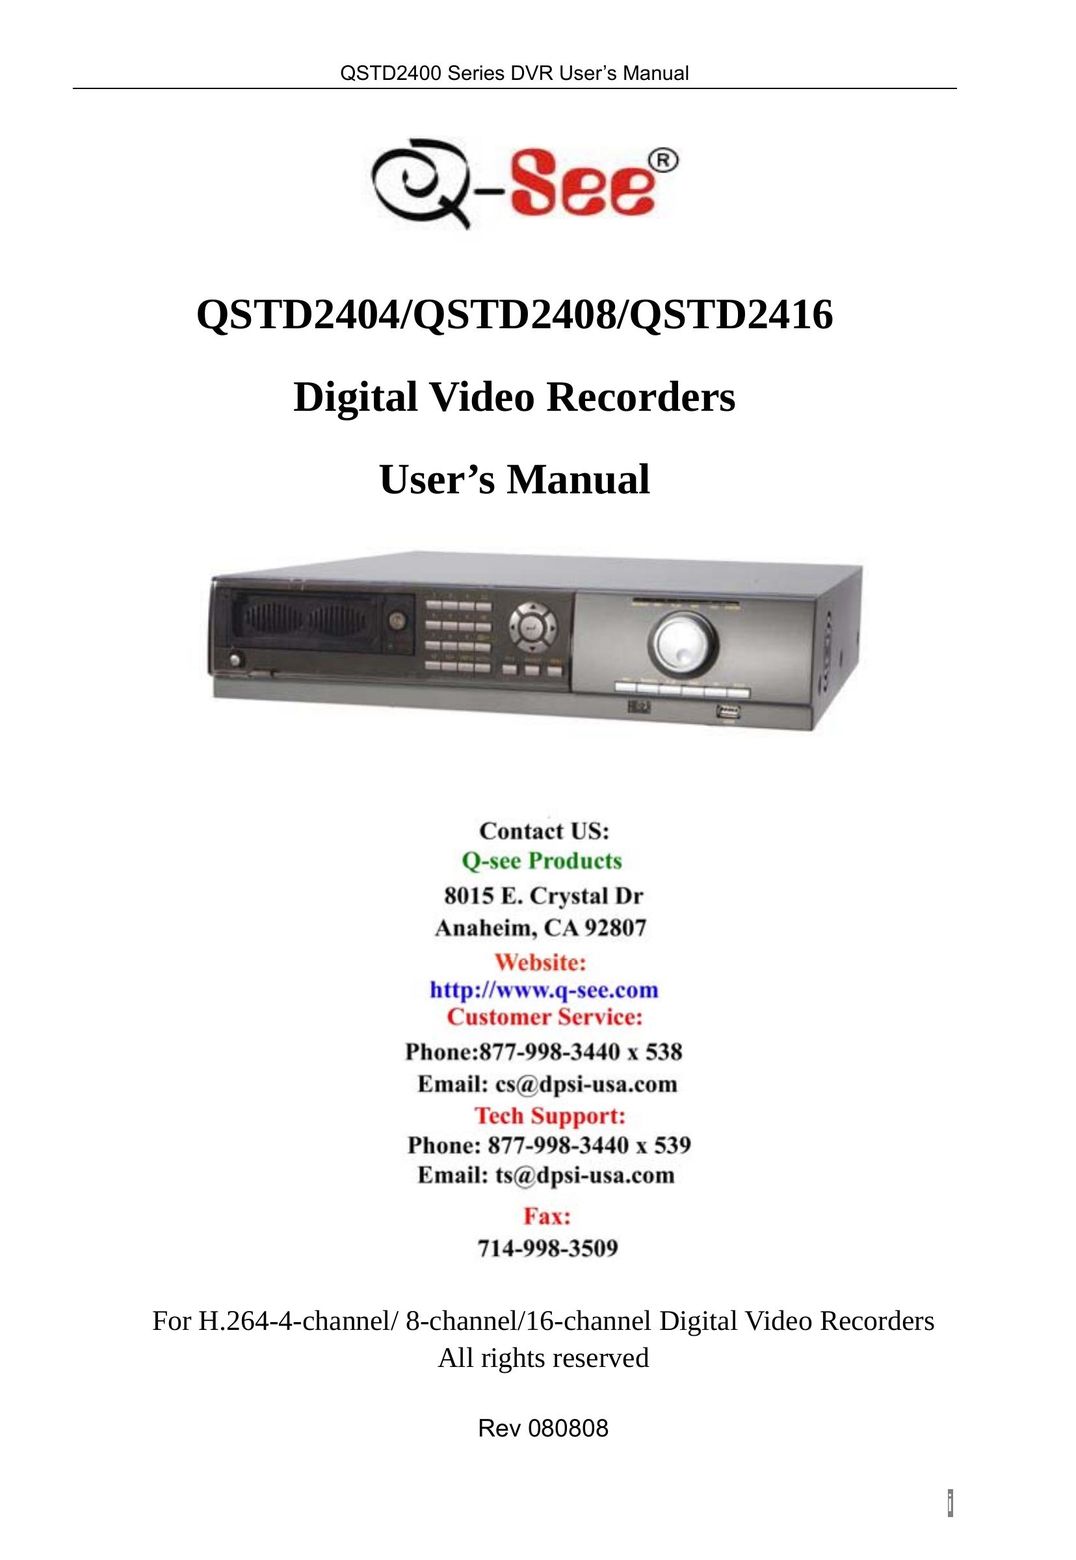 Q-See QSTD2404 Fan User Manual